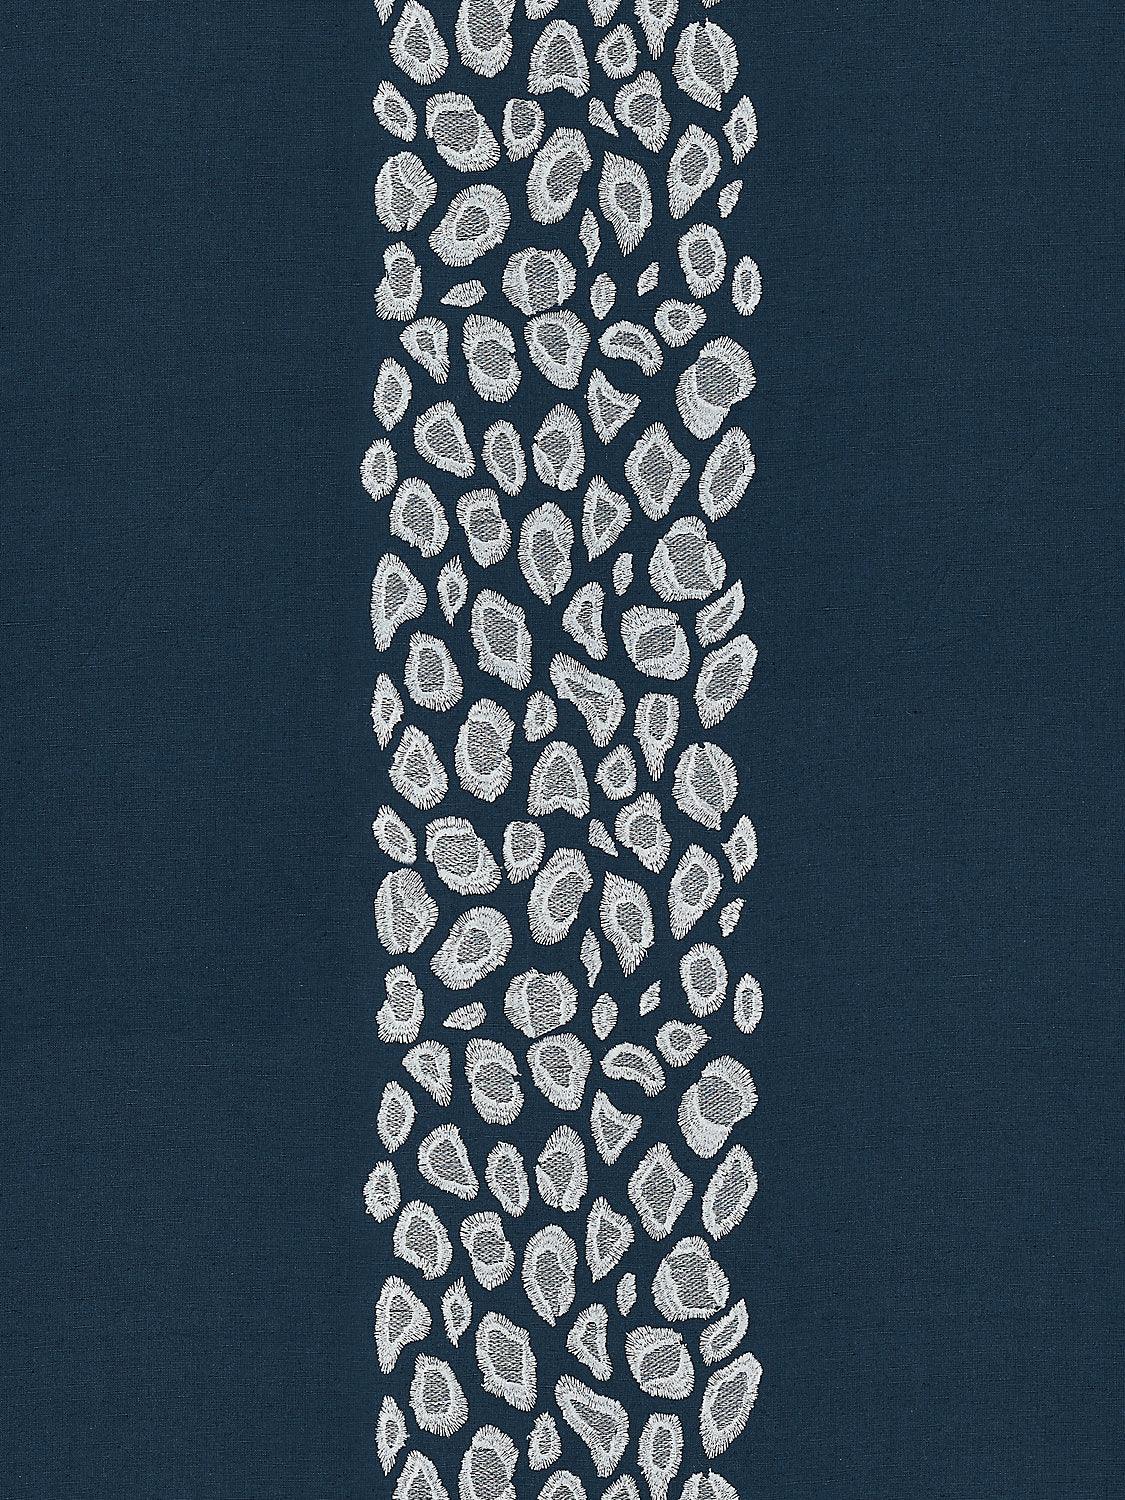 CATWALK EMBROIDERY MIDNIGHT - Atlanta Fabrics